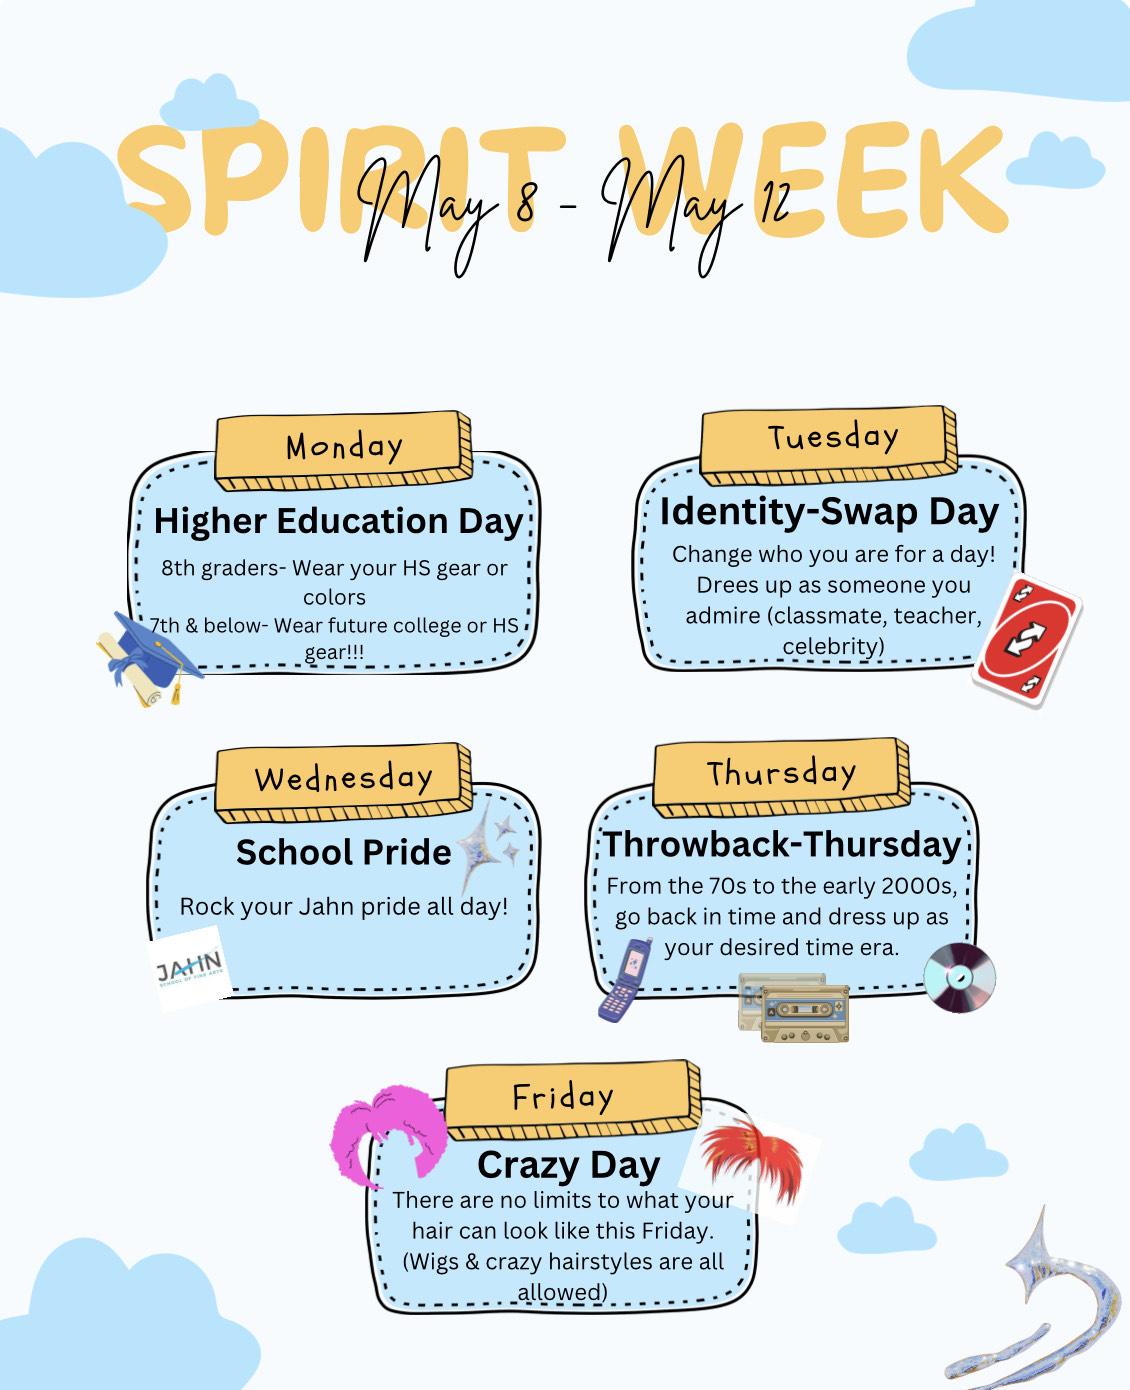 Spirit Week activities